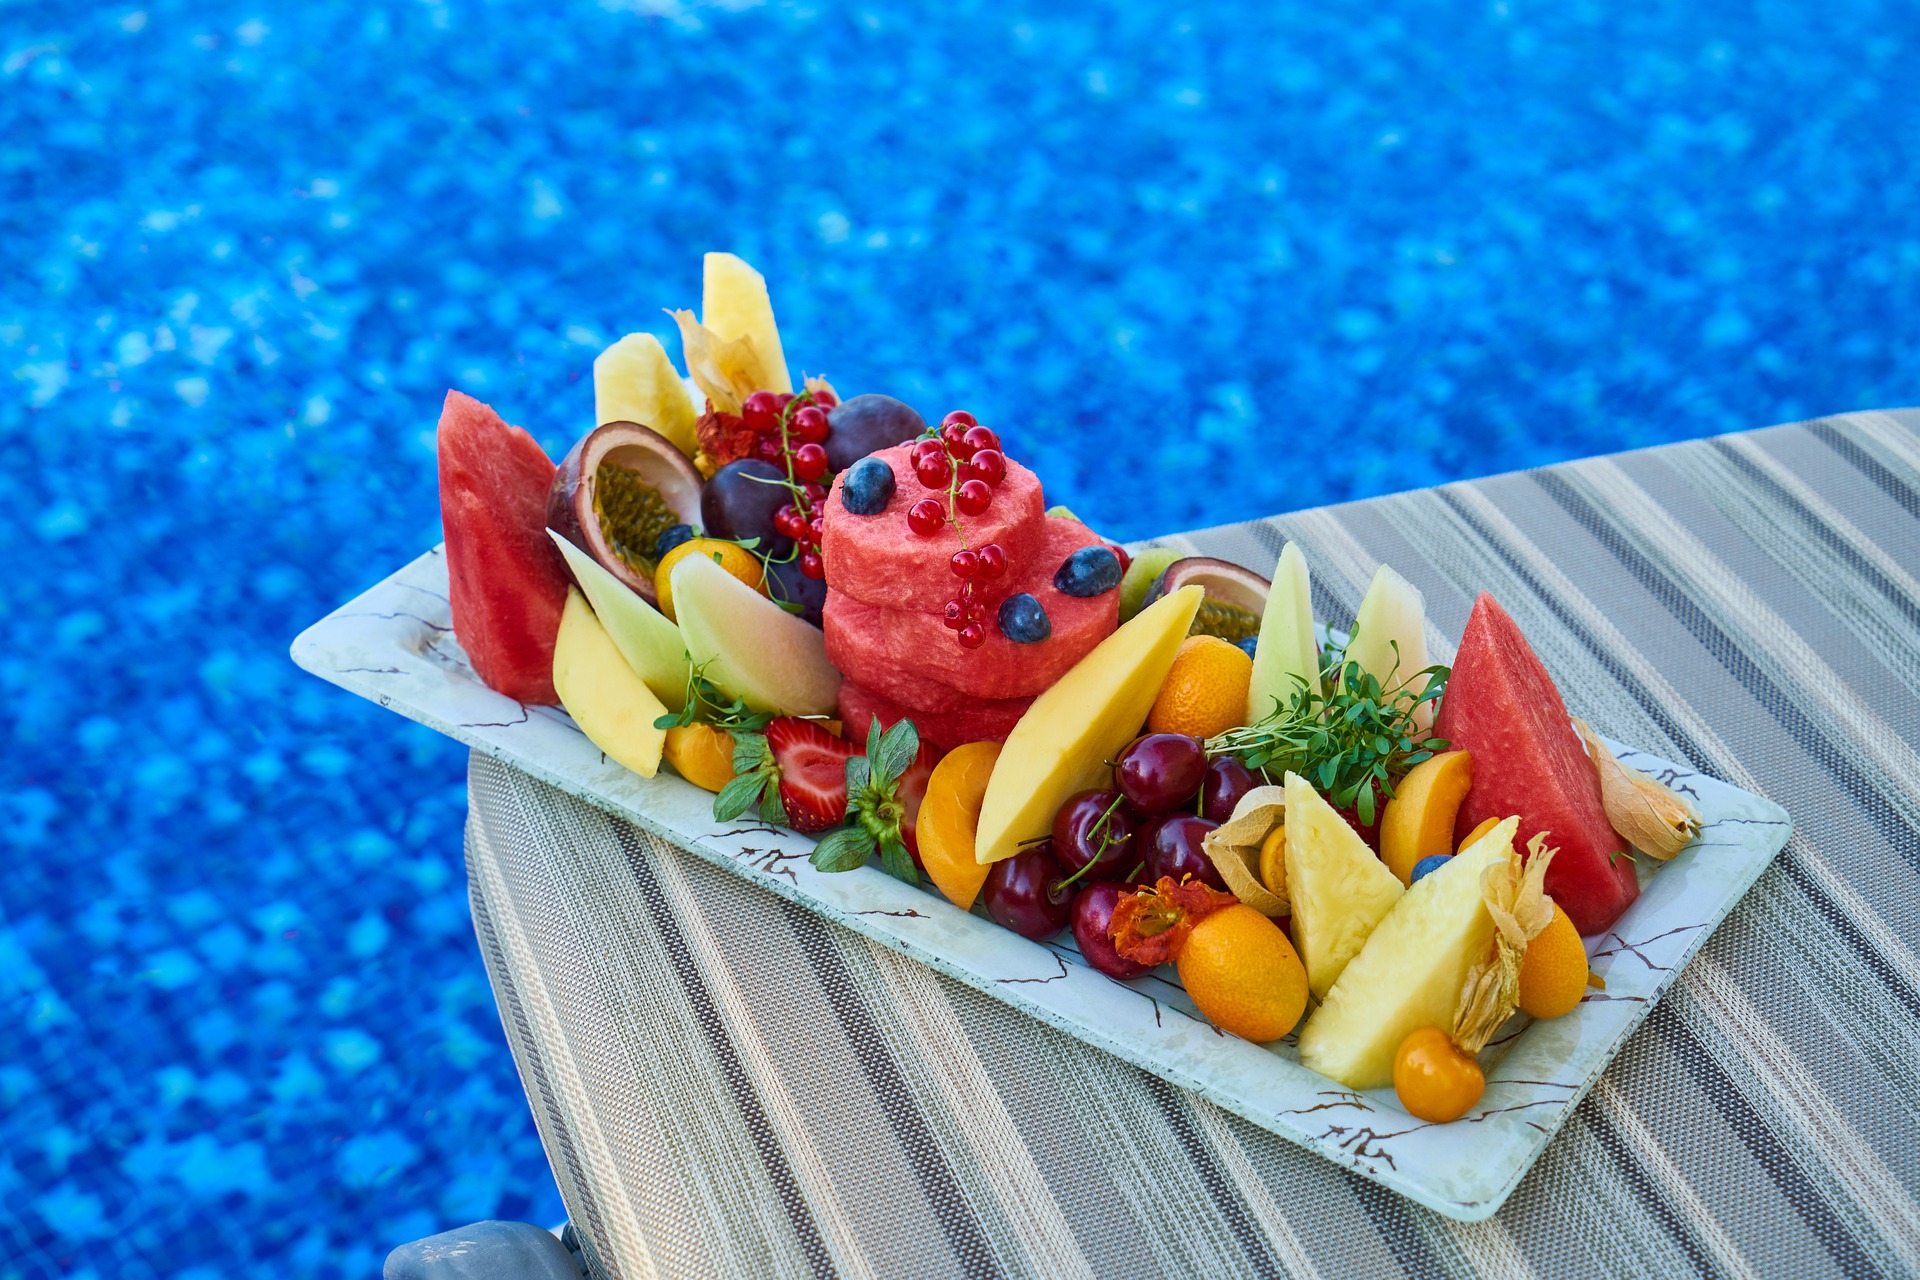 platter of cut fruit varieties on pool deck overlooking blue pool water